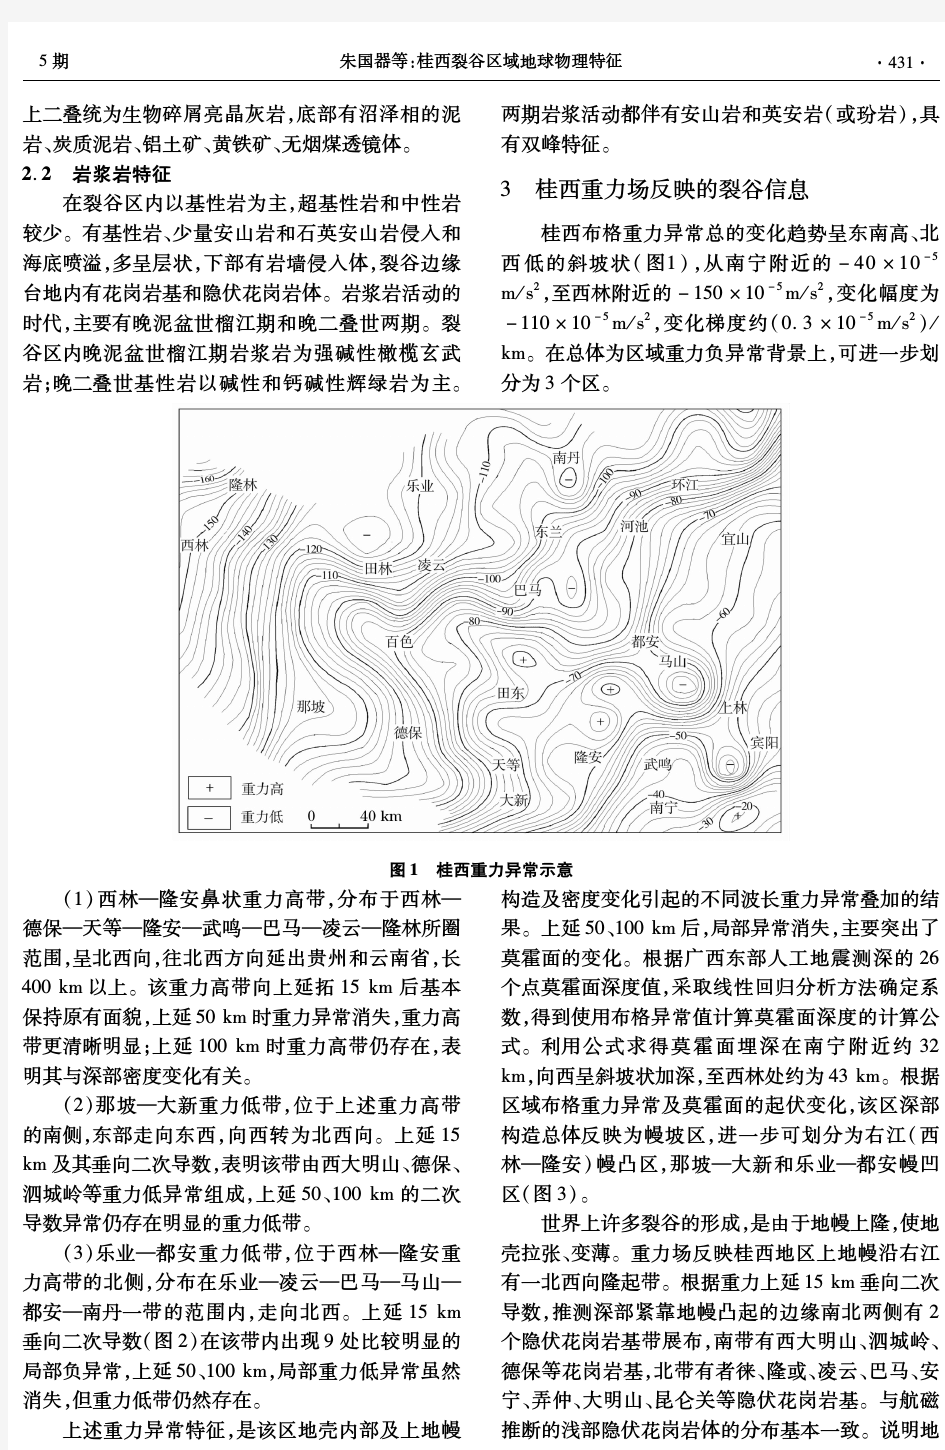 桂西裂谷区域地球物理特征